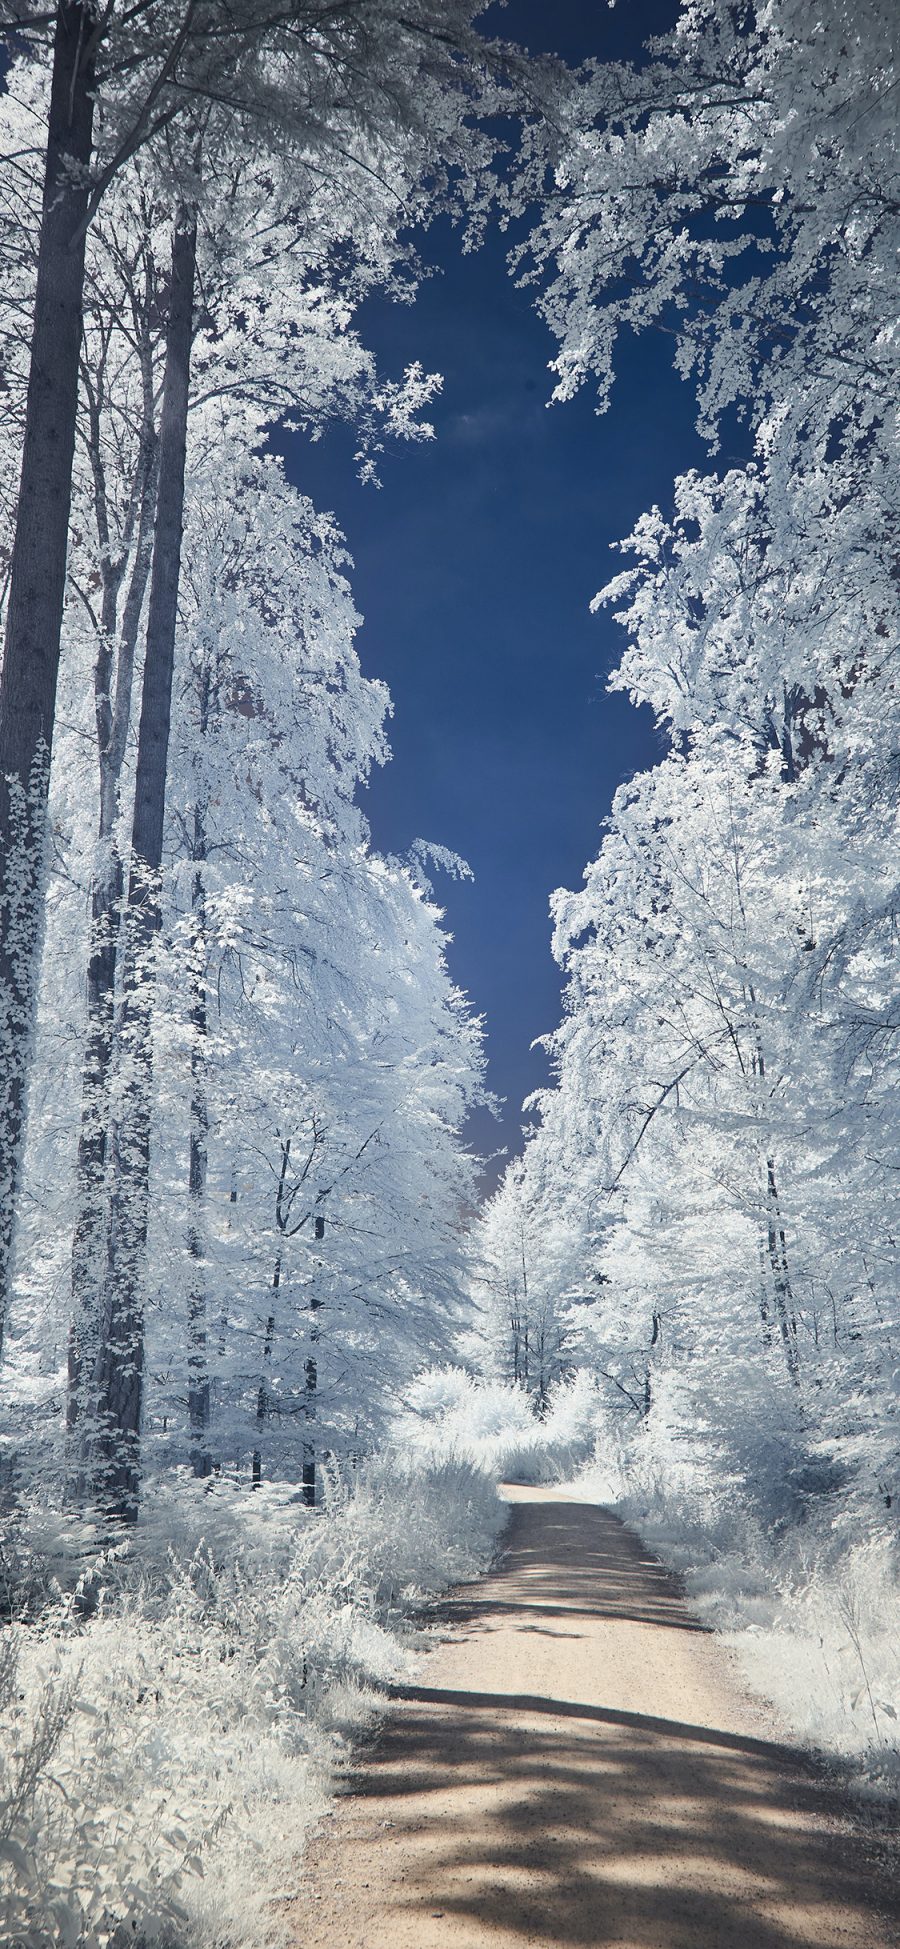 2436 1125 冬季雪景树木梦幻苹果手机壁纸图片 全面屏手机壁纸